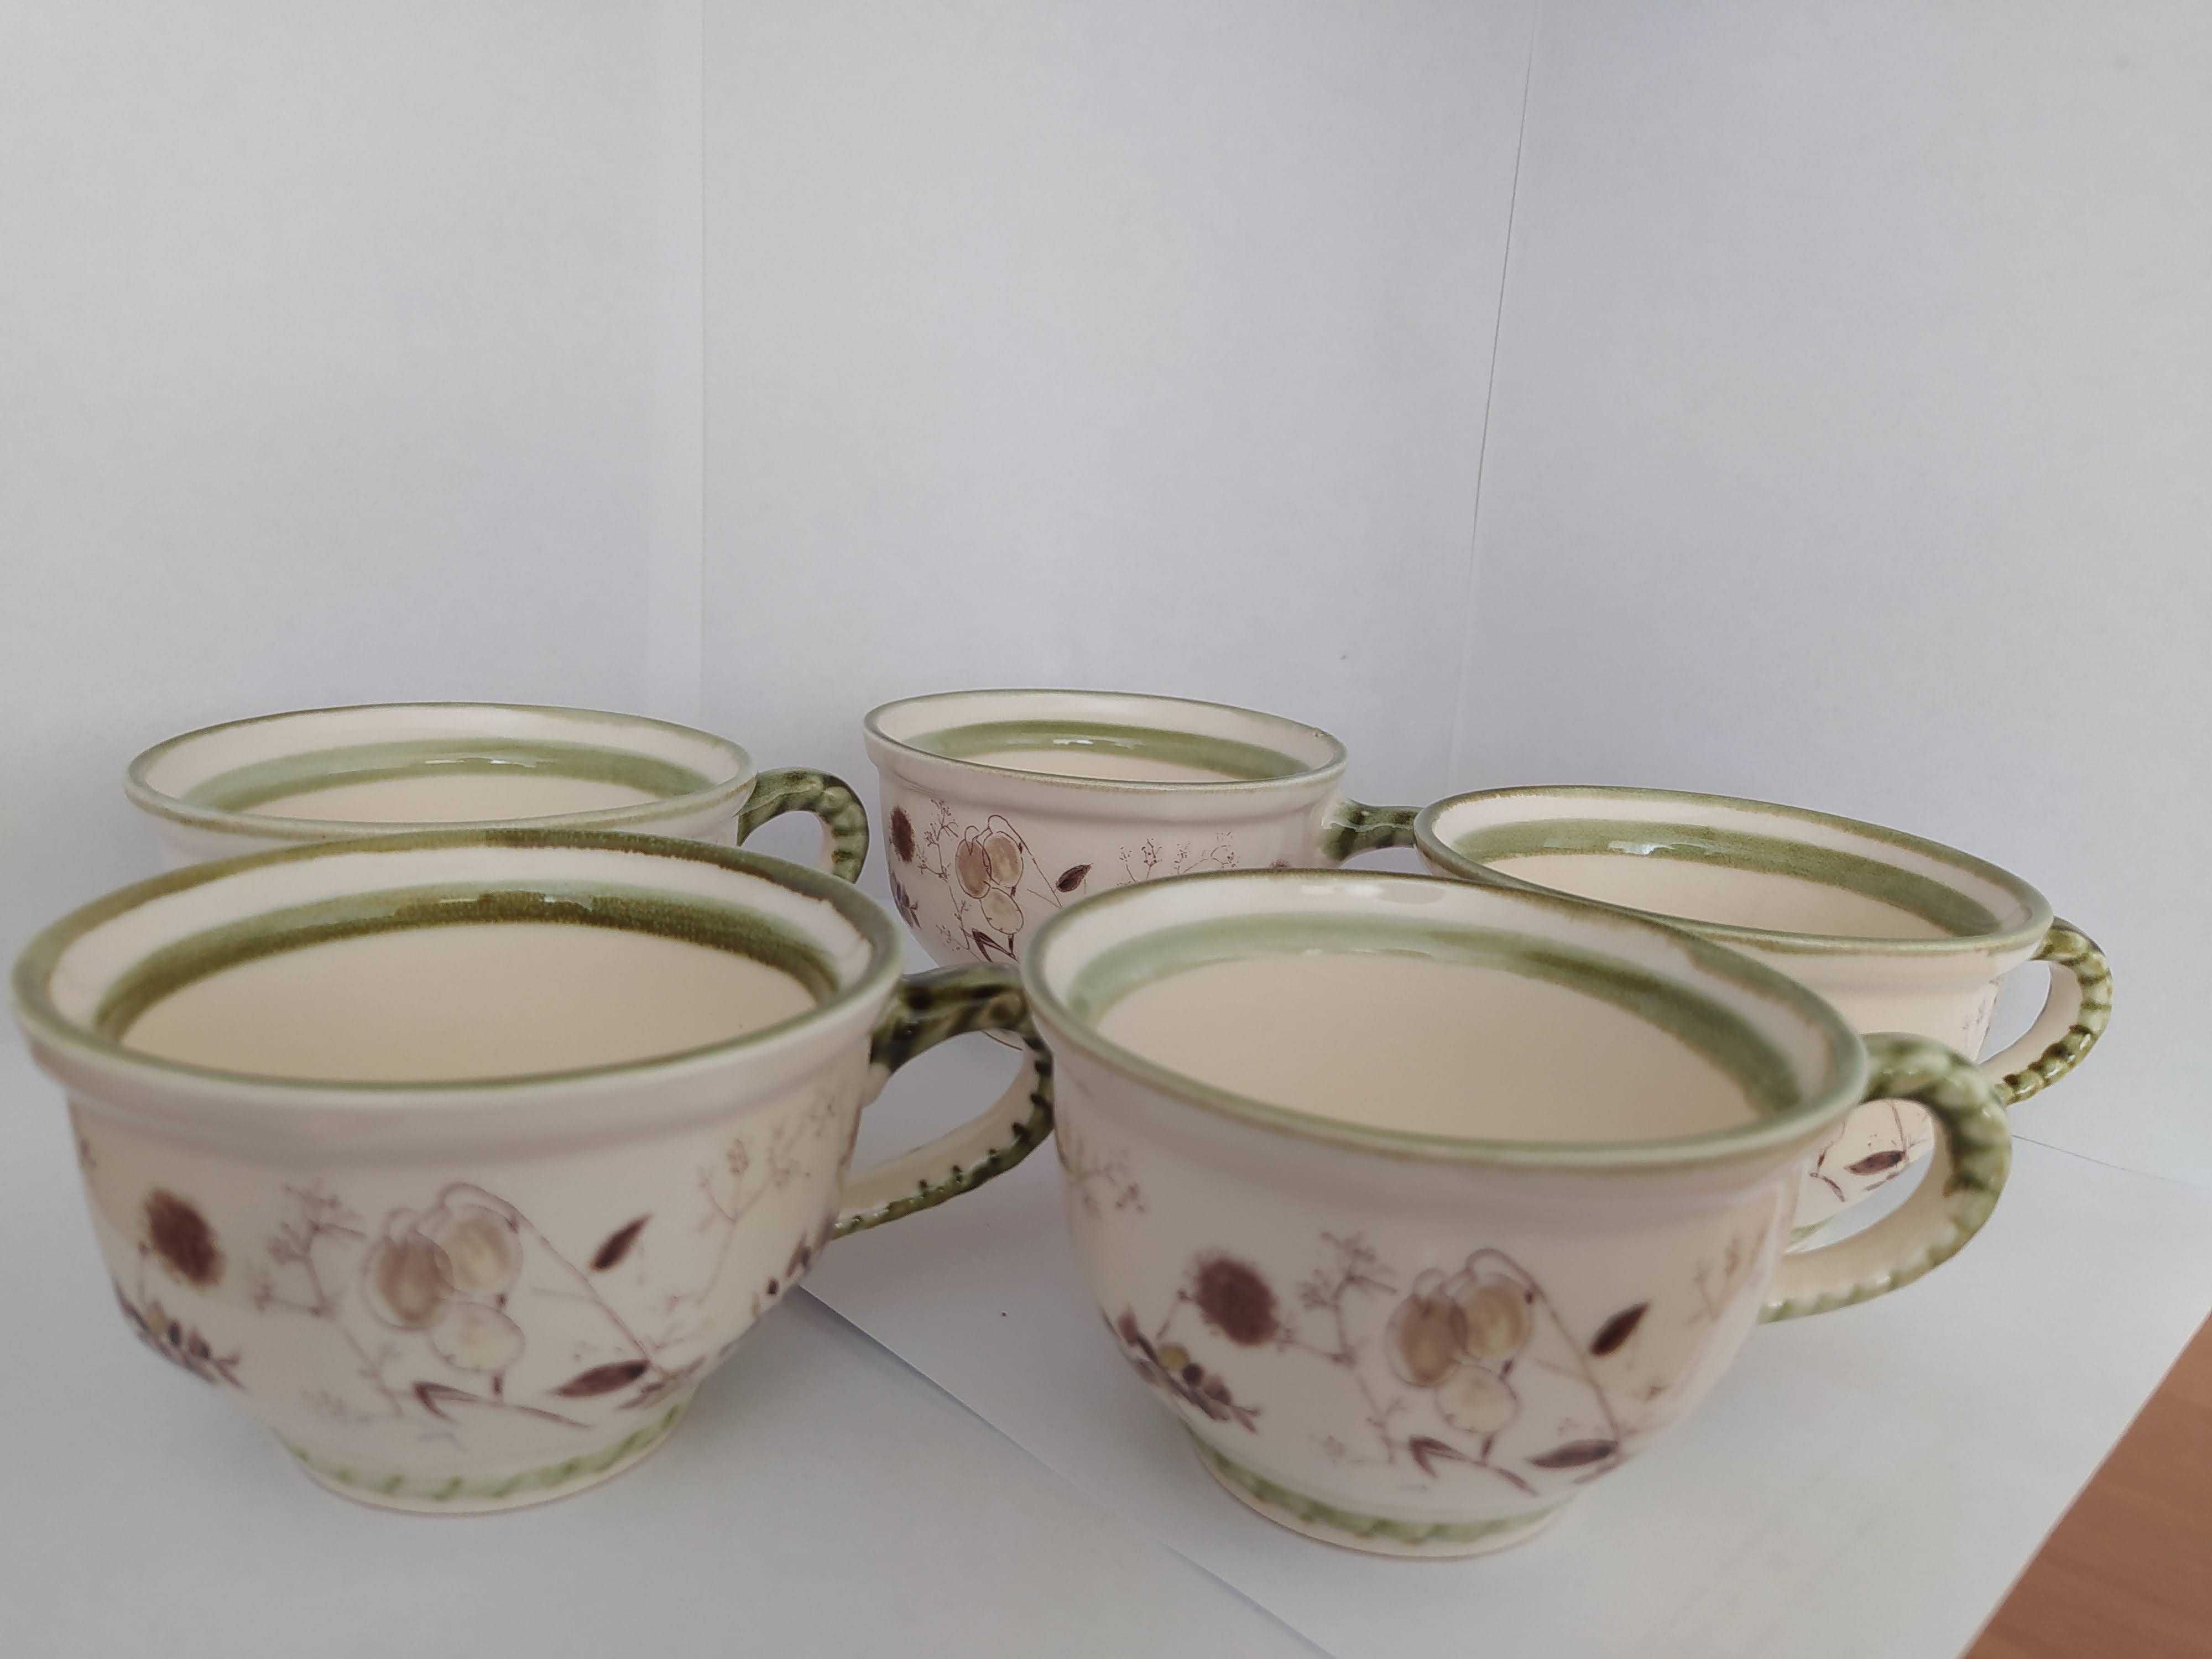 Zestaw Zeller Keramik Niemcy ceramika filiżanki bulionówki świecznik